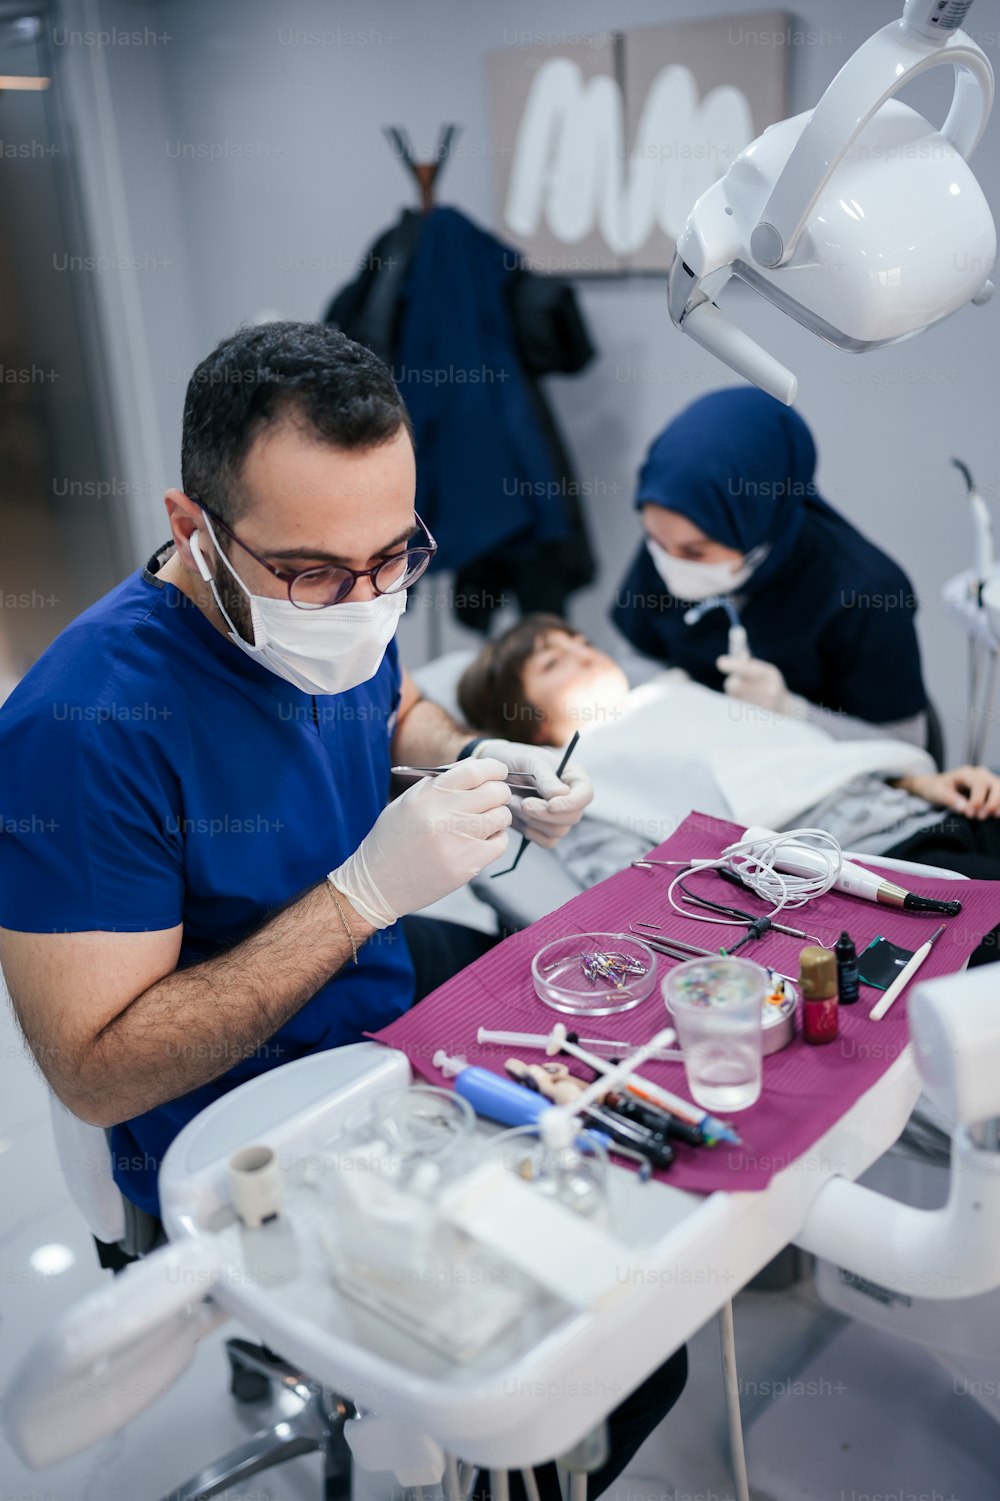 Un uomo seduto su una poltrona del dentista mentre indossa una maschera